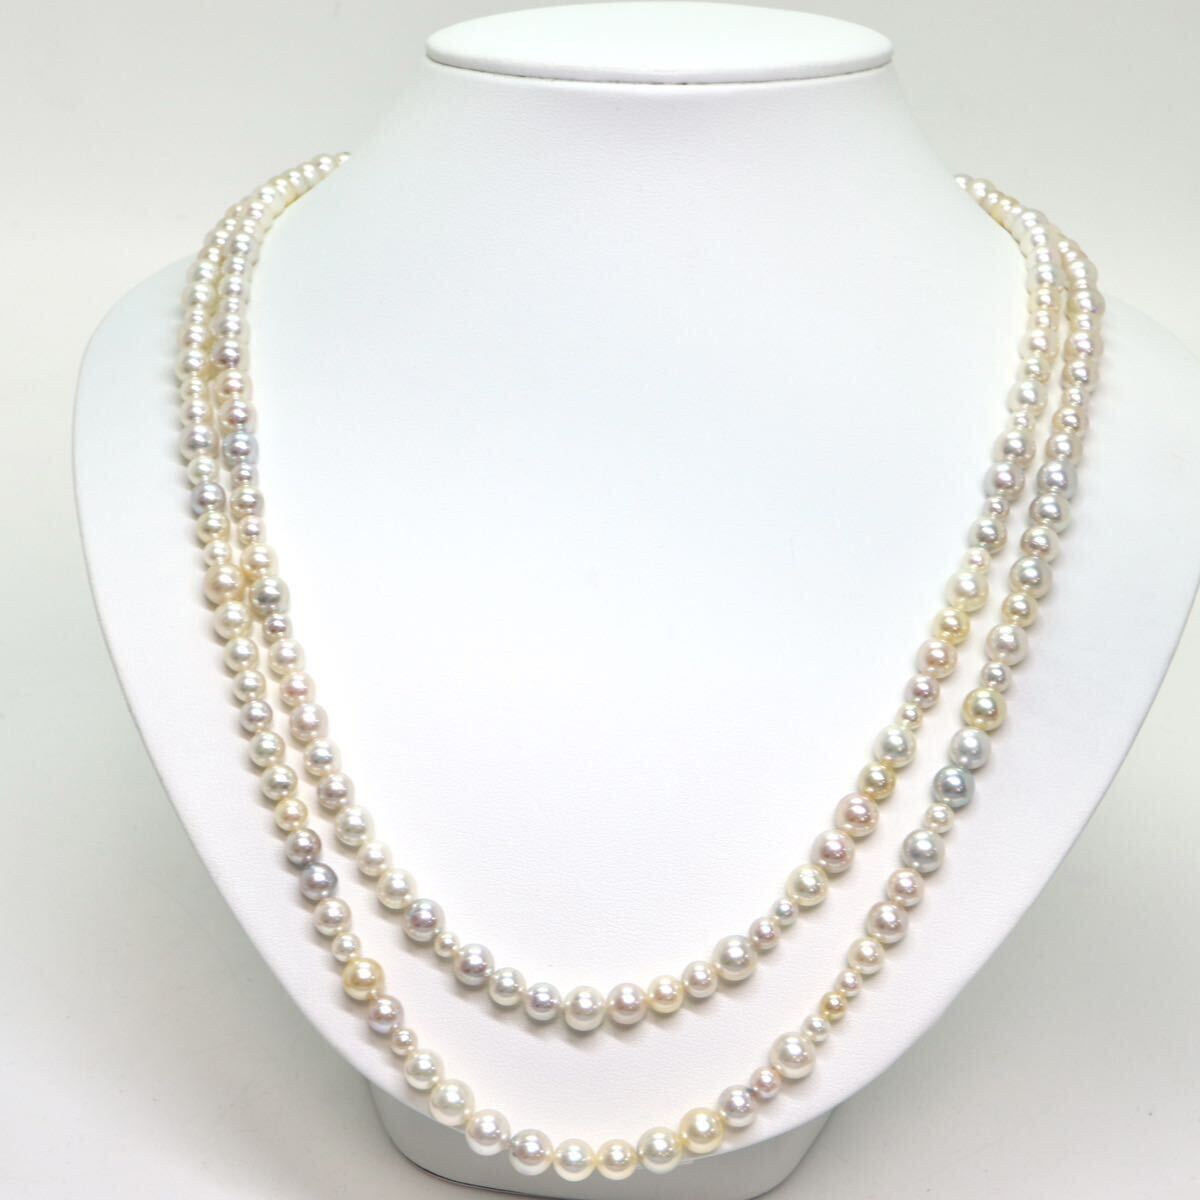 テリ良し!!《K18WG アコヤ本真珠ロングネックレス》A 約4.0-7.0mm珠 63.6g 約120.5cm pearl necklace ジュエリー jewelry CA0/CA0の画像3